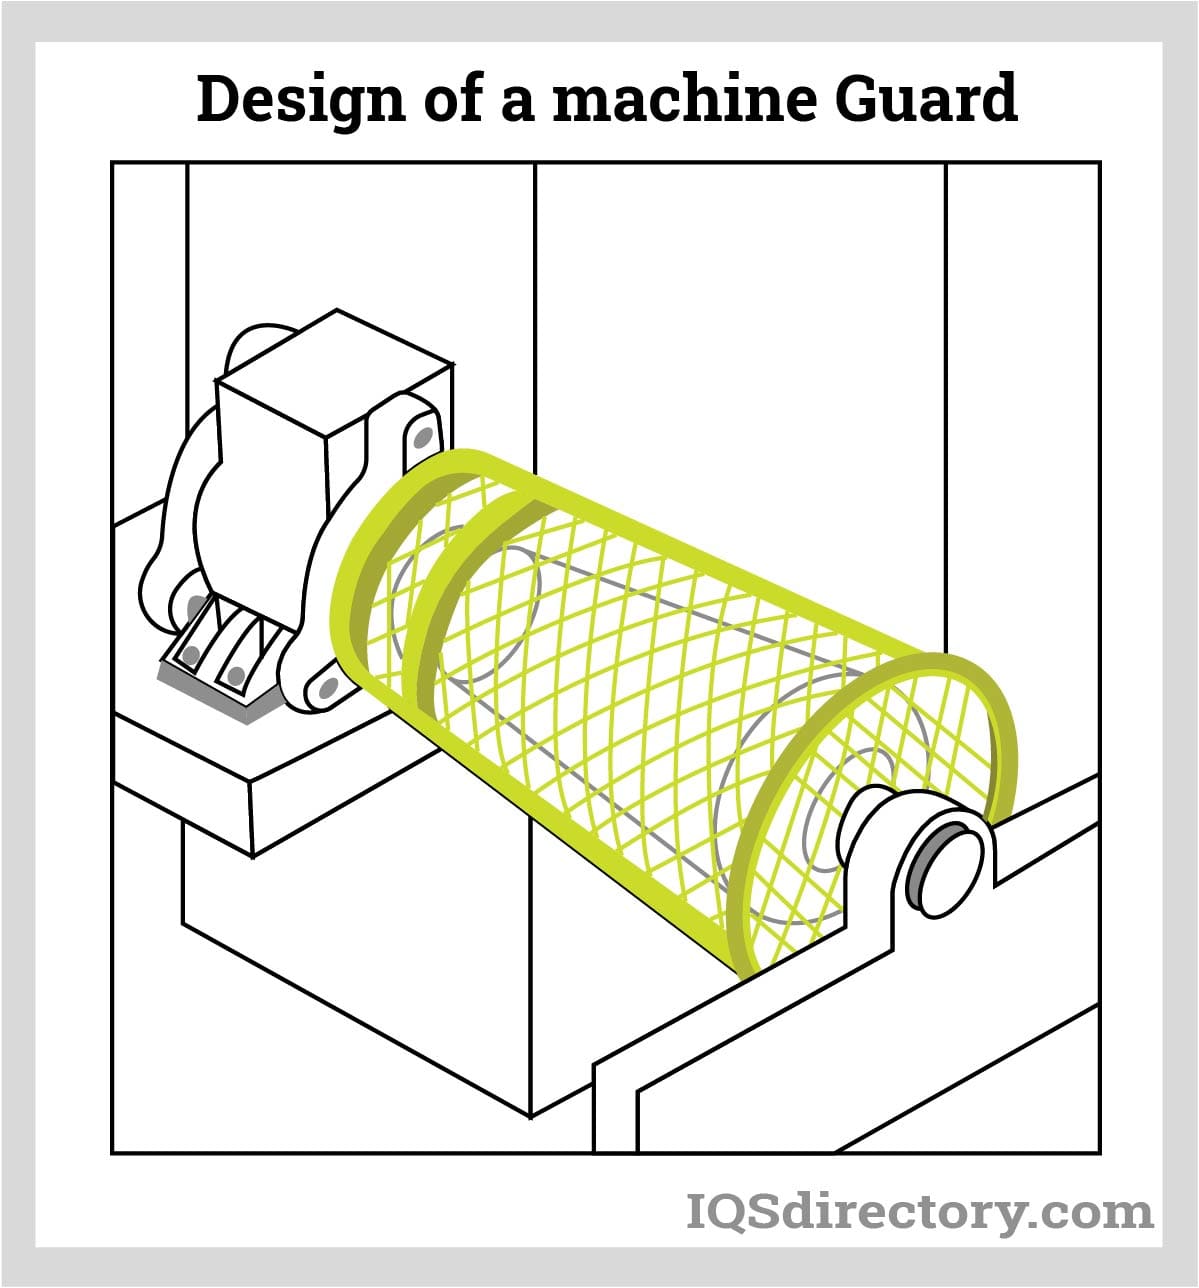 Design of a Machine Guard